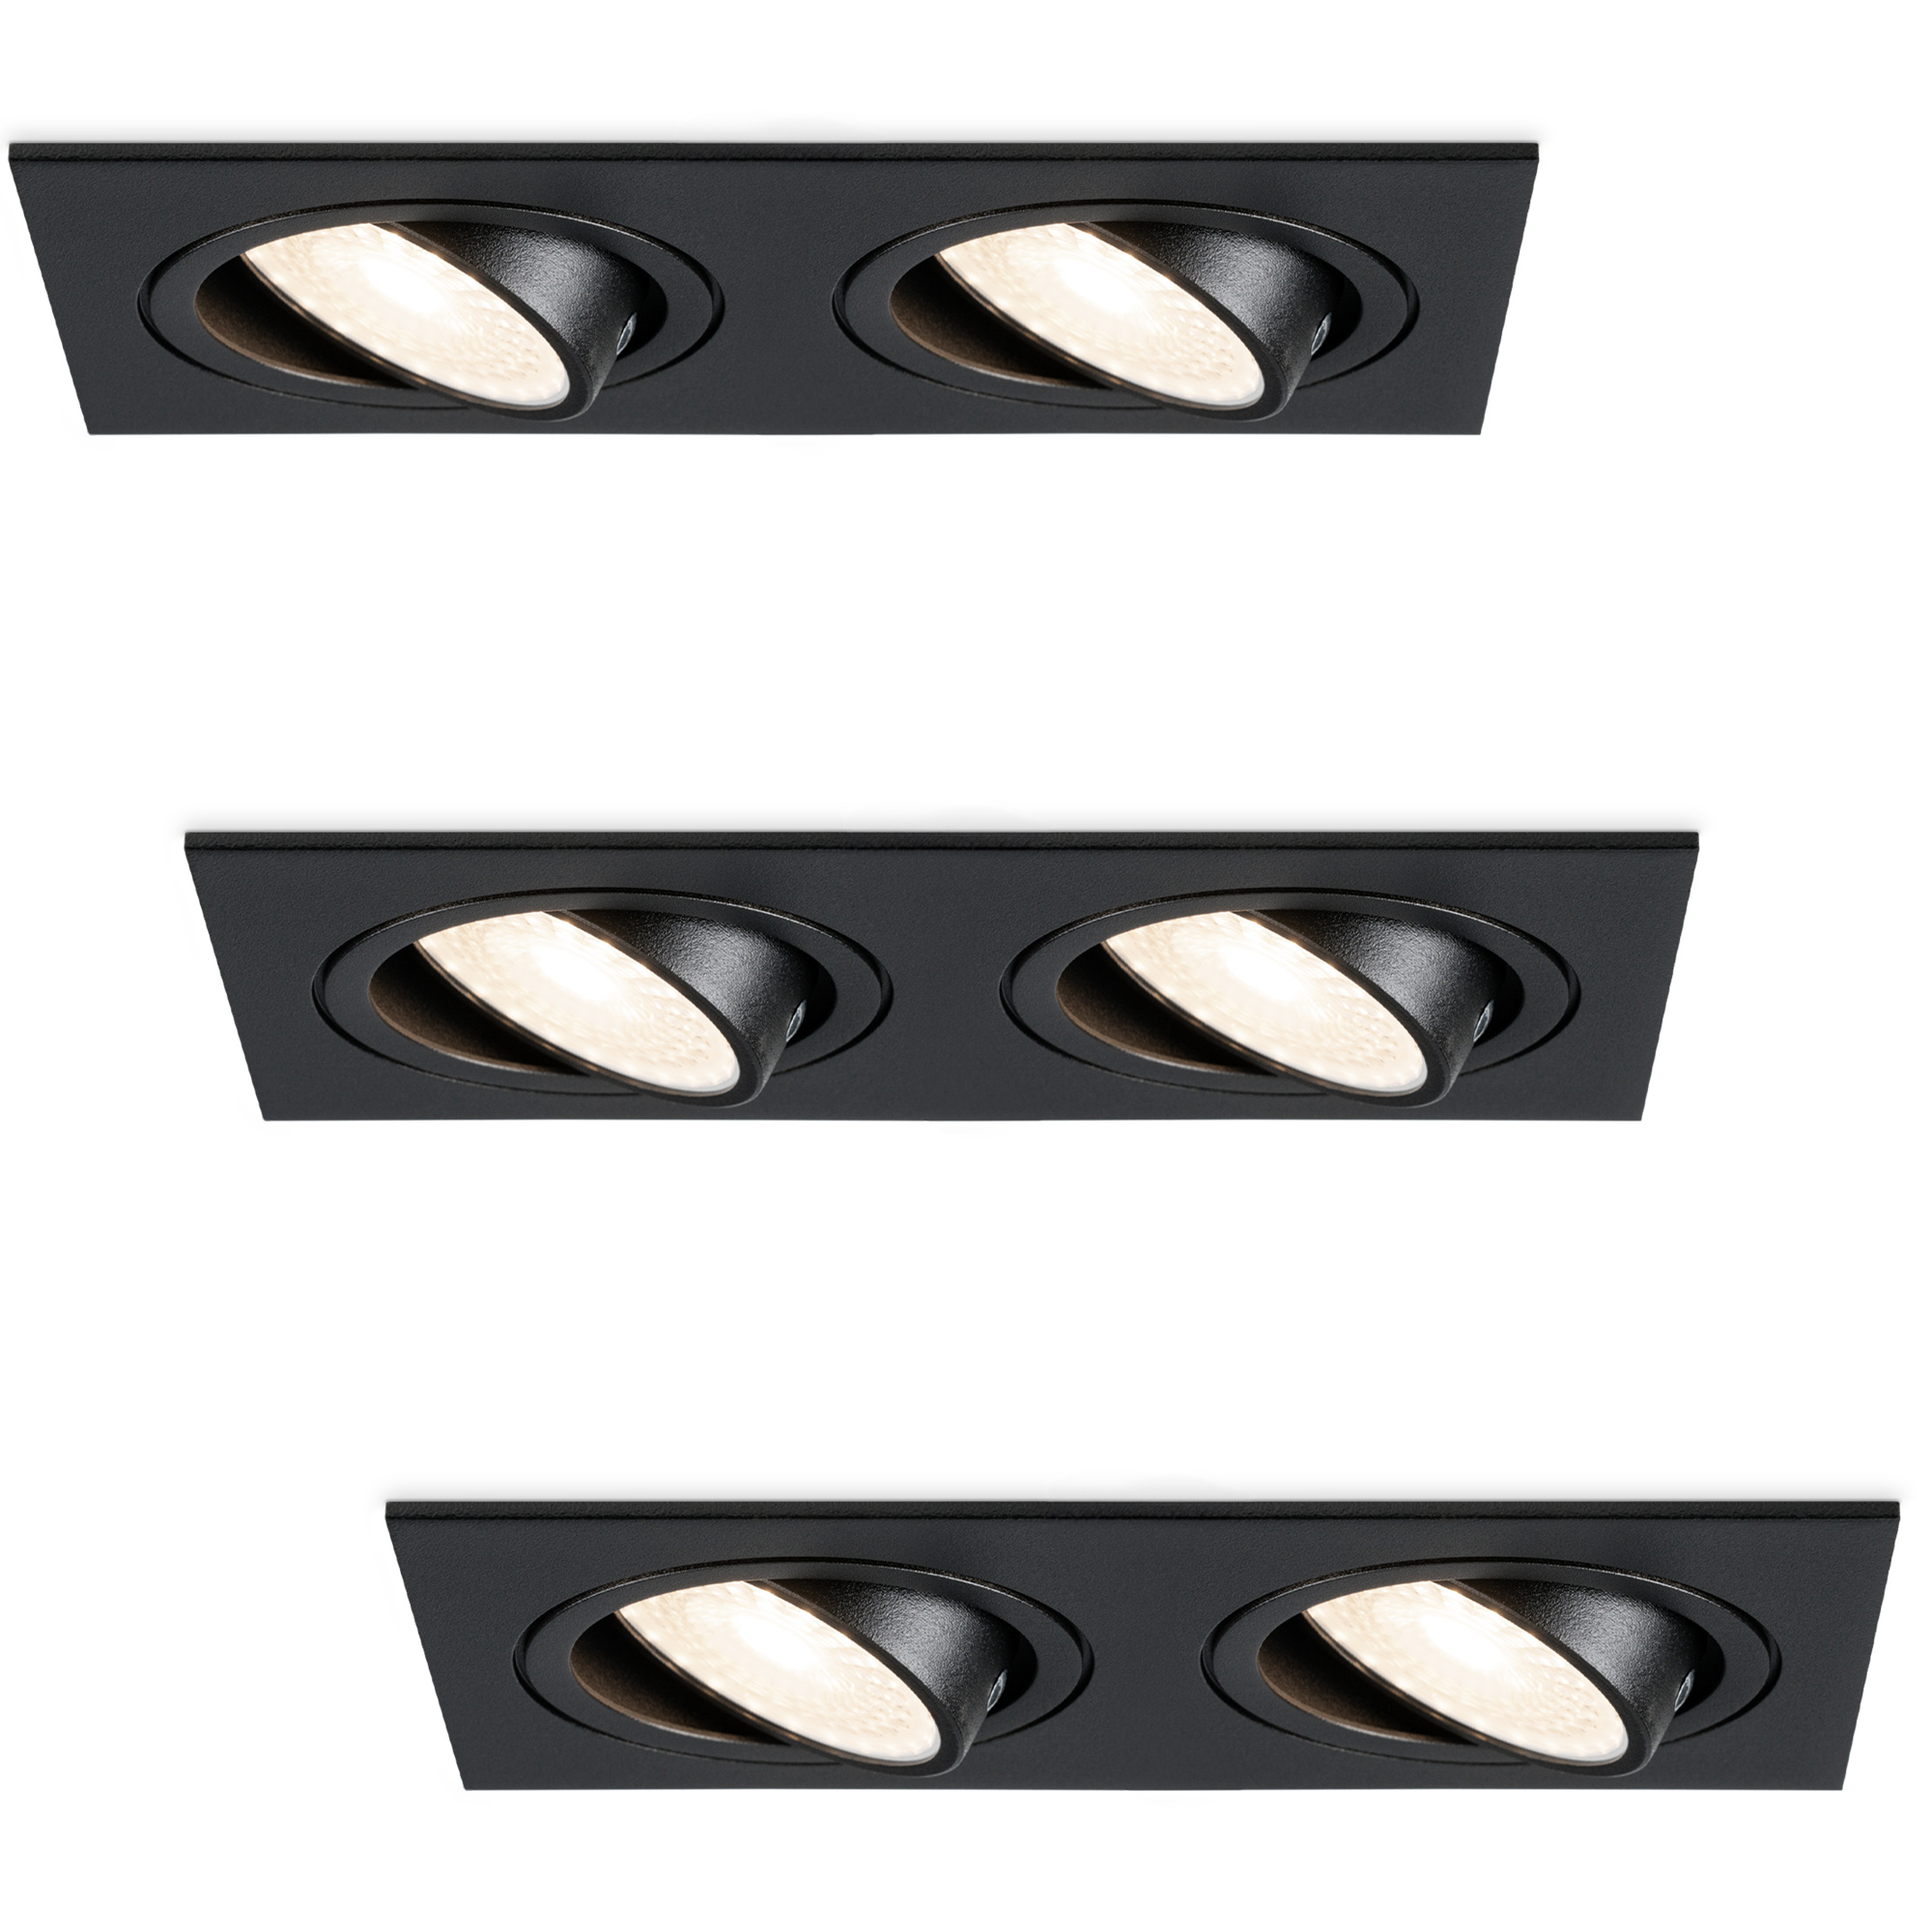 HOFTRONIC Set van 3 Mallorca dubbele LED inbouwspots vierkant - Kantelbaar - 4000K Neutraal wit - GU